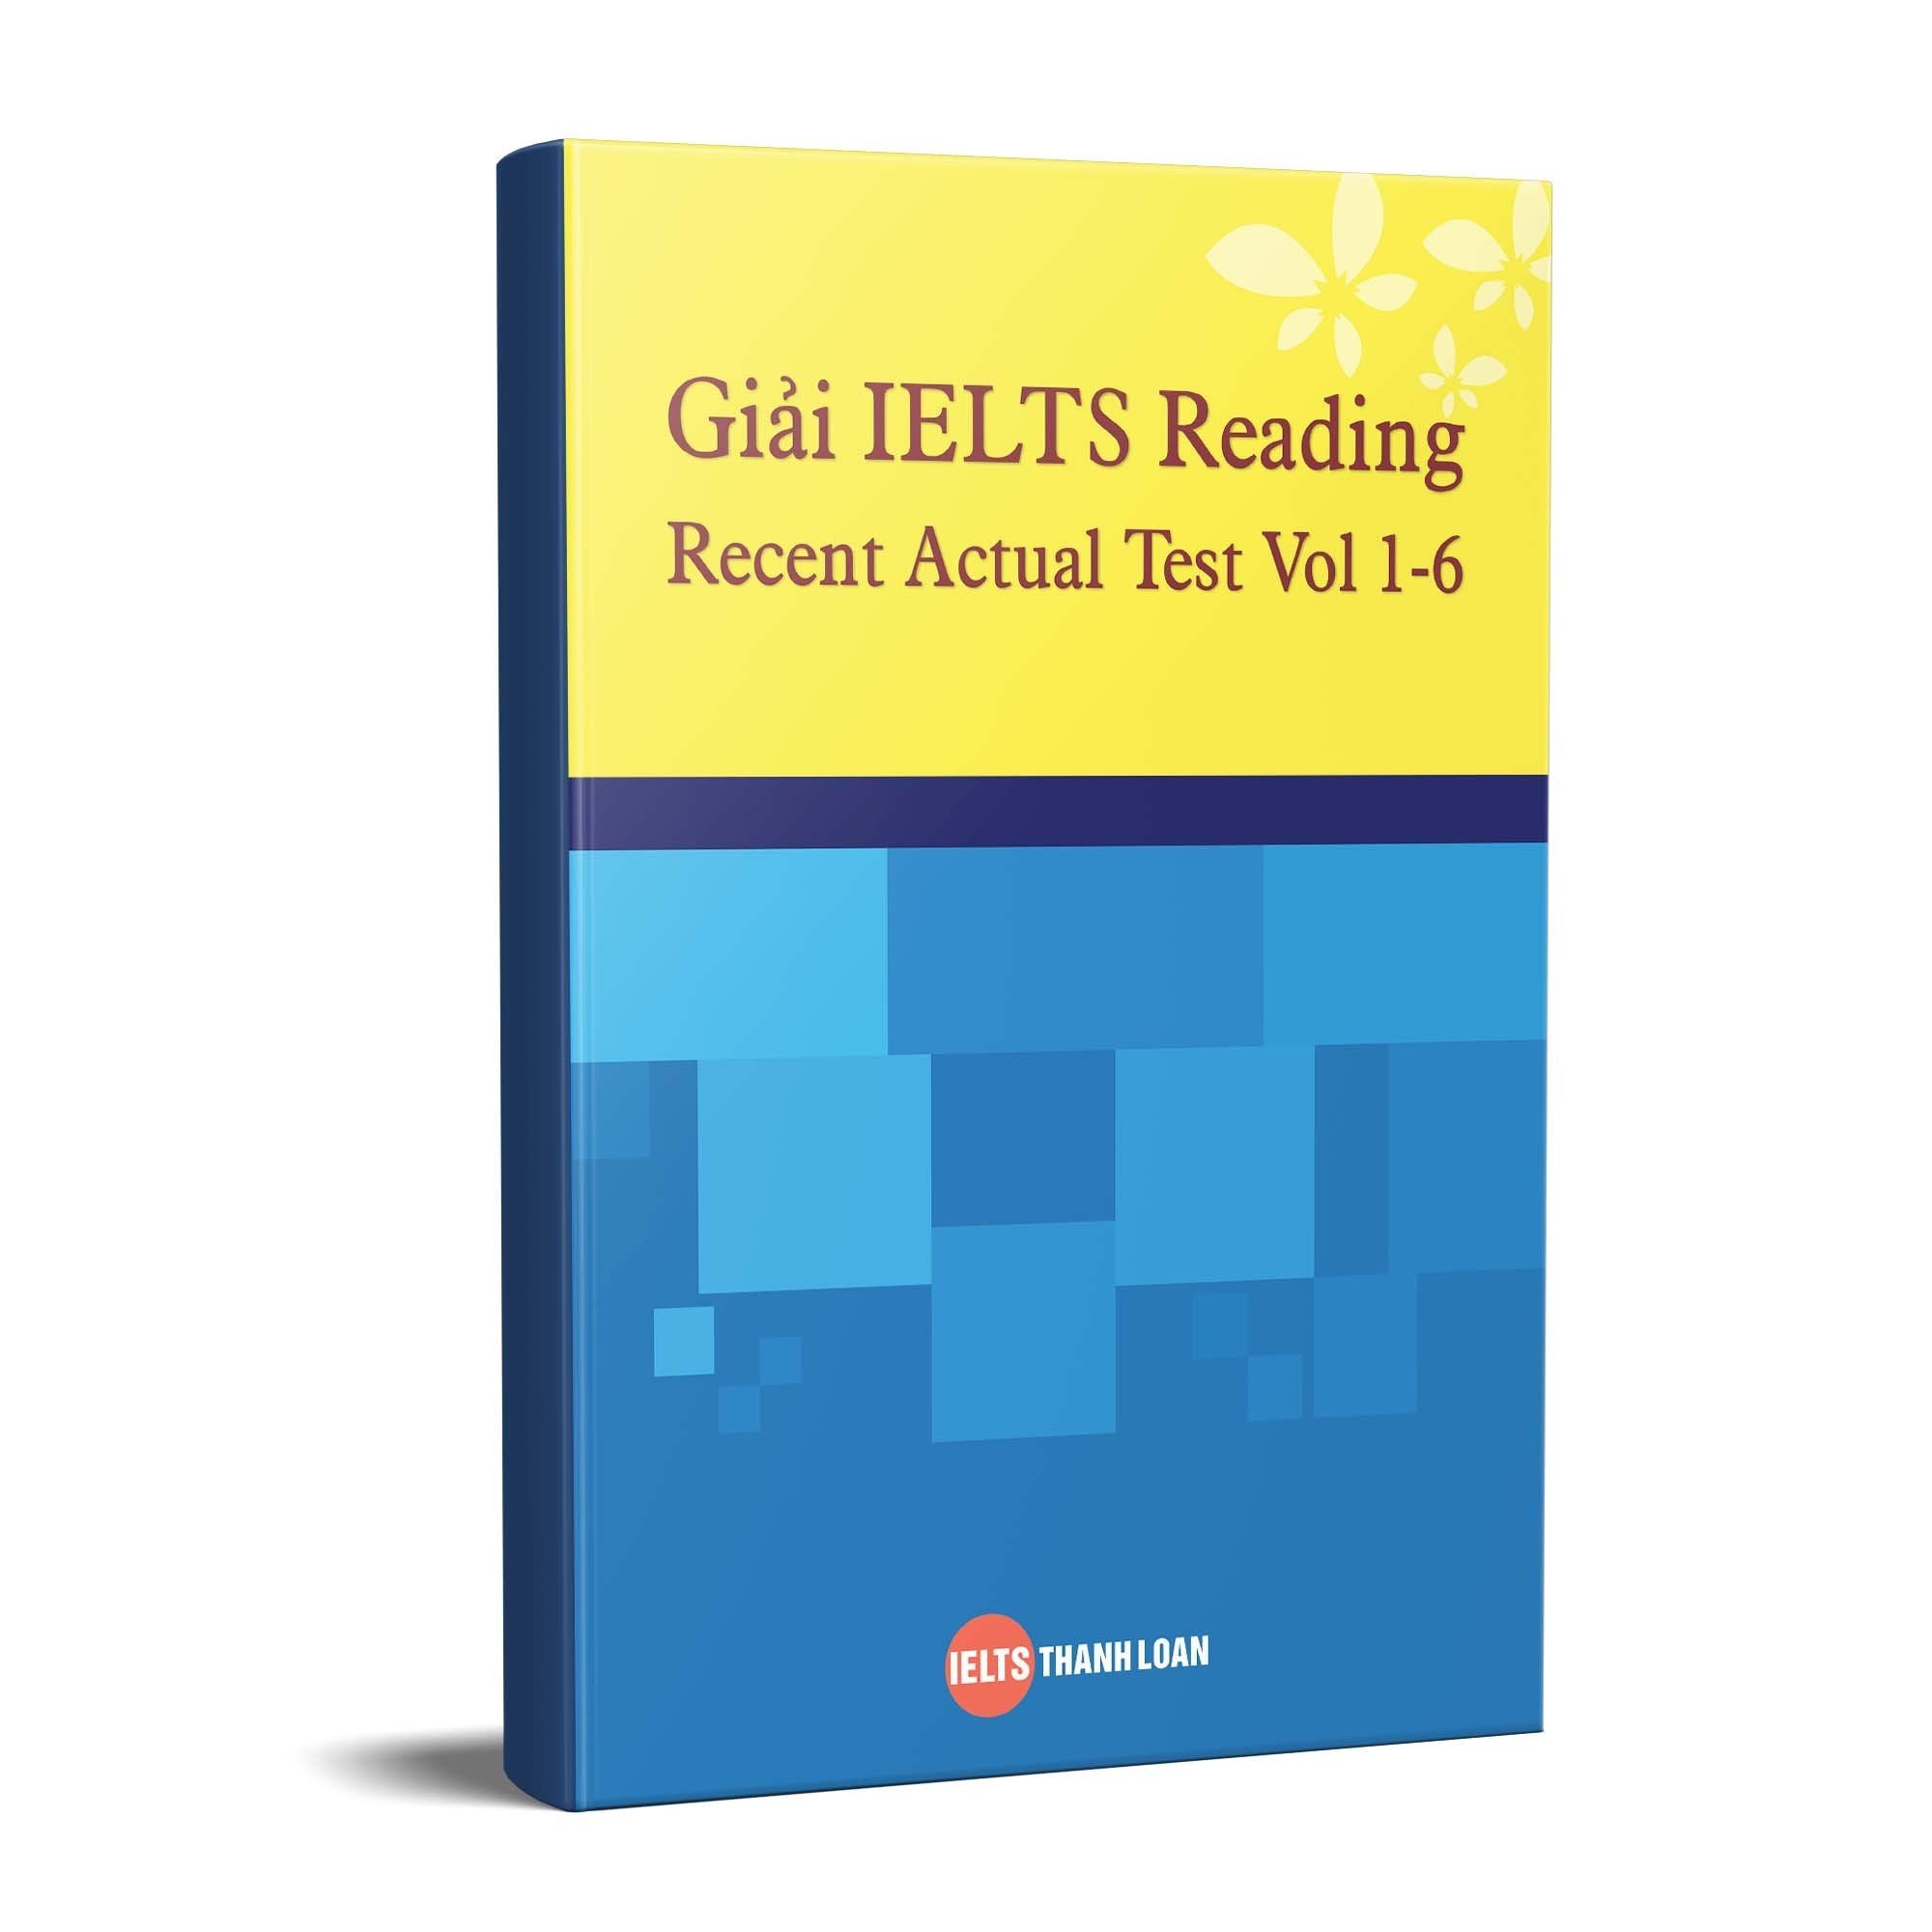 [Chỉ có Ebook] Giải IELTS Reading Recent Actual Test Vol 1-6